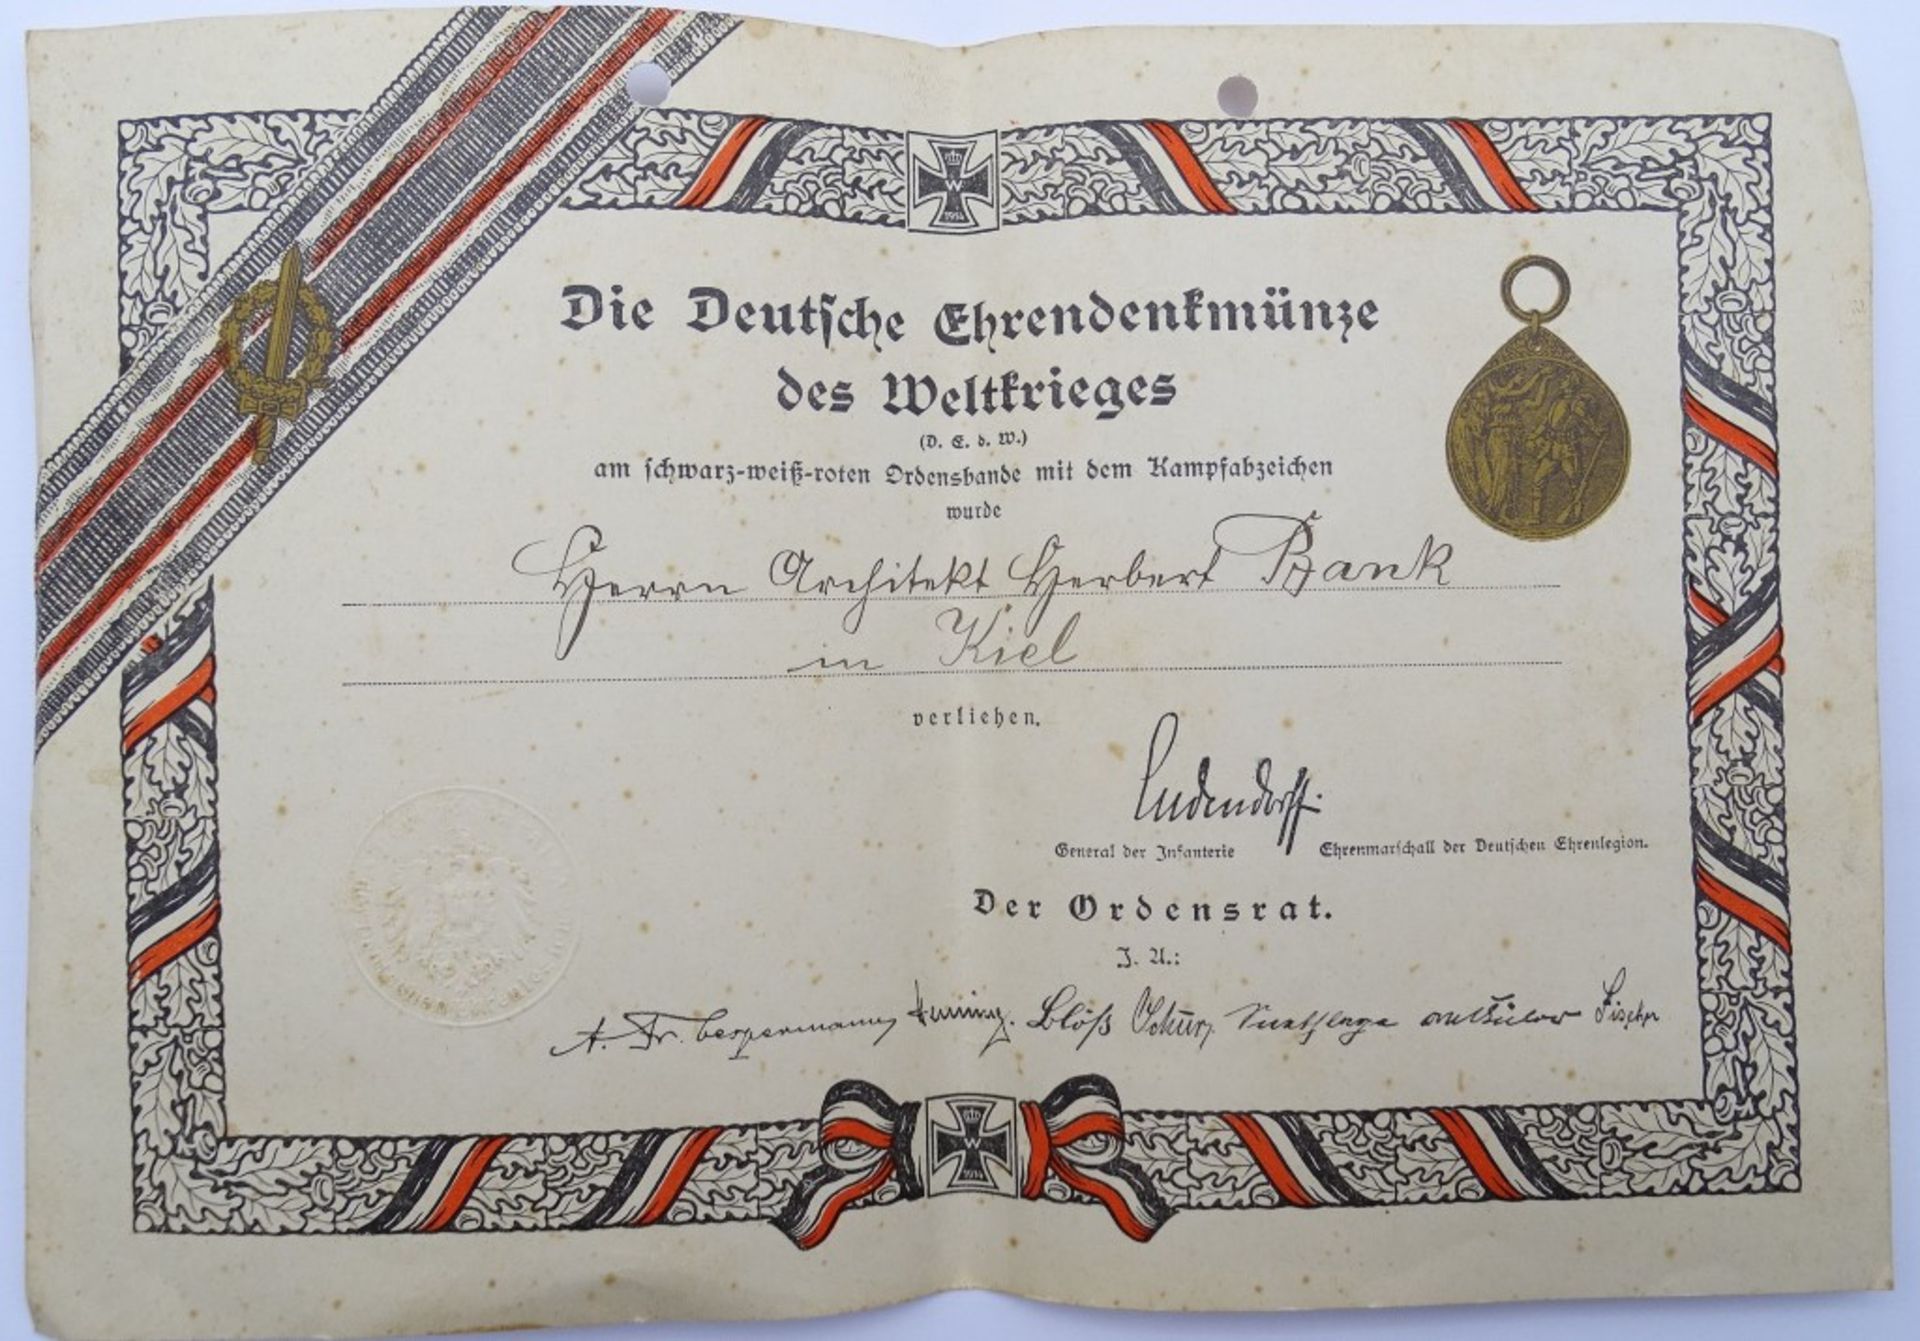 Verleihungsurkunde für "Die deutsche Ehrendenkmünze des Weltkrieges